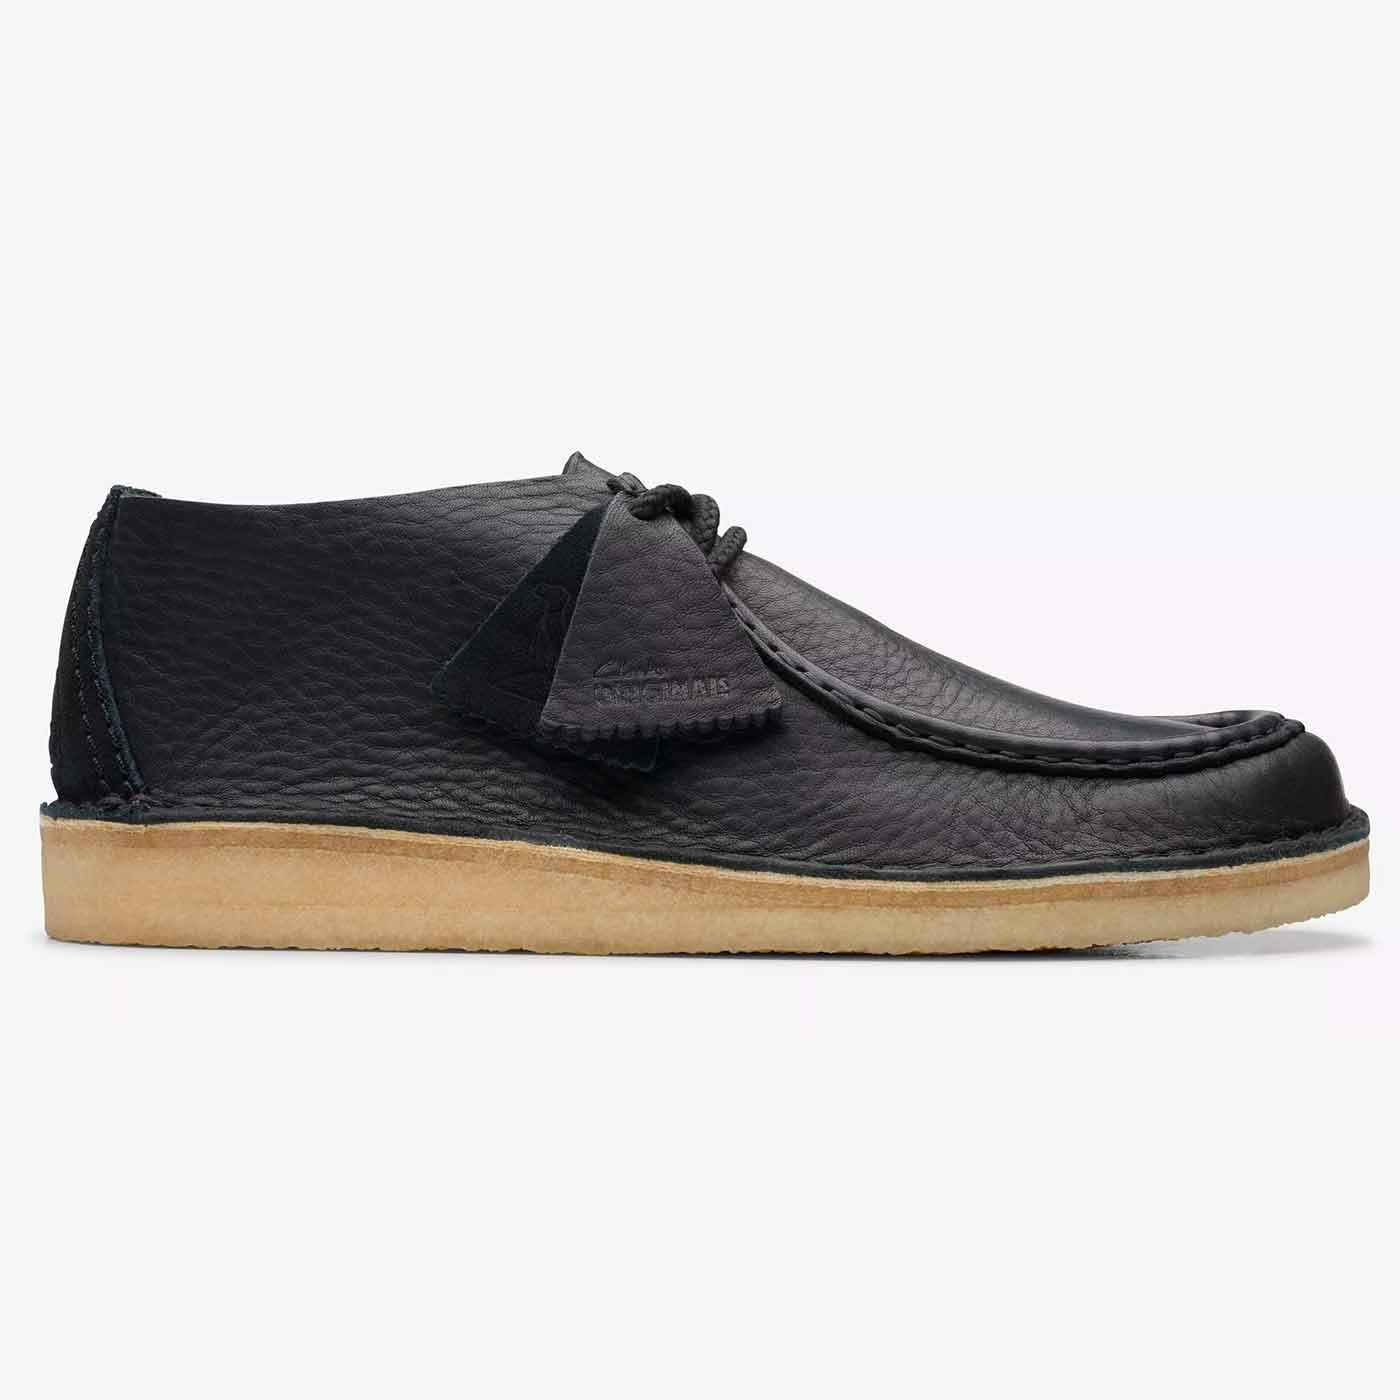 Desert Nomad Clarks Originals Black Leather Shoes